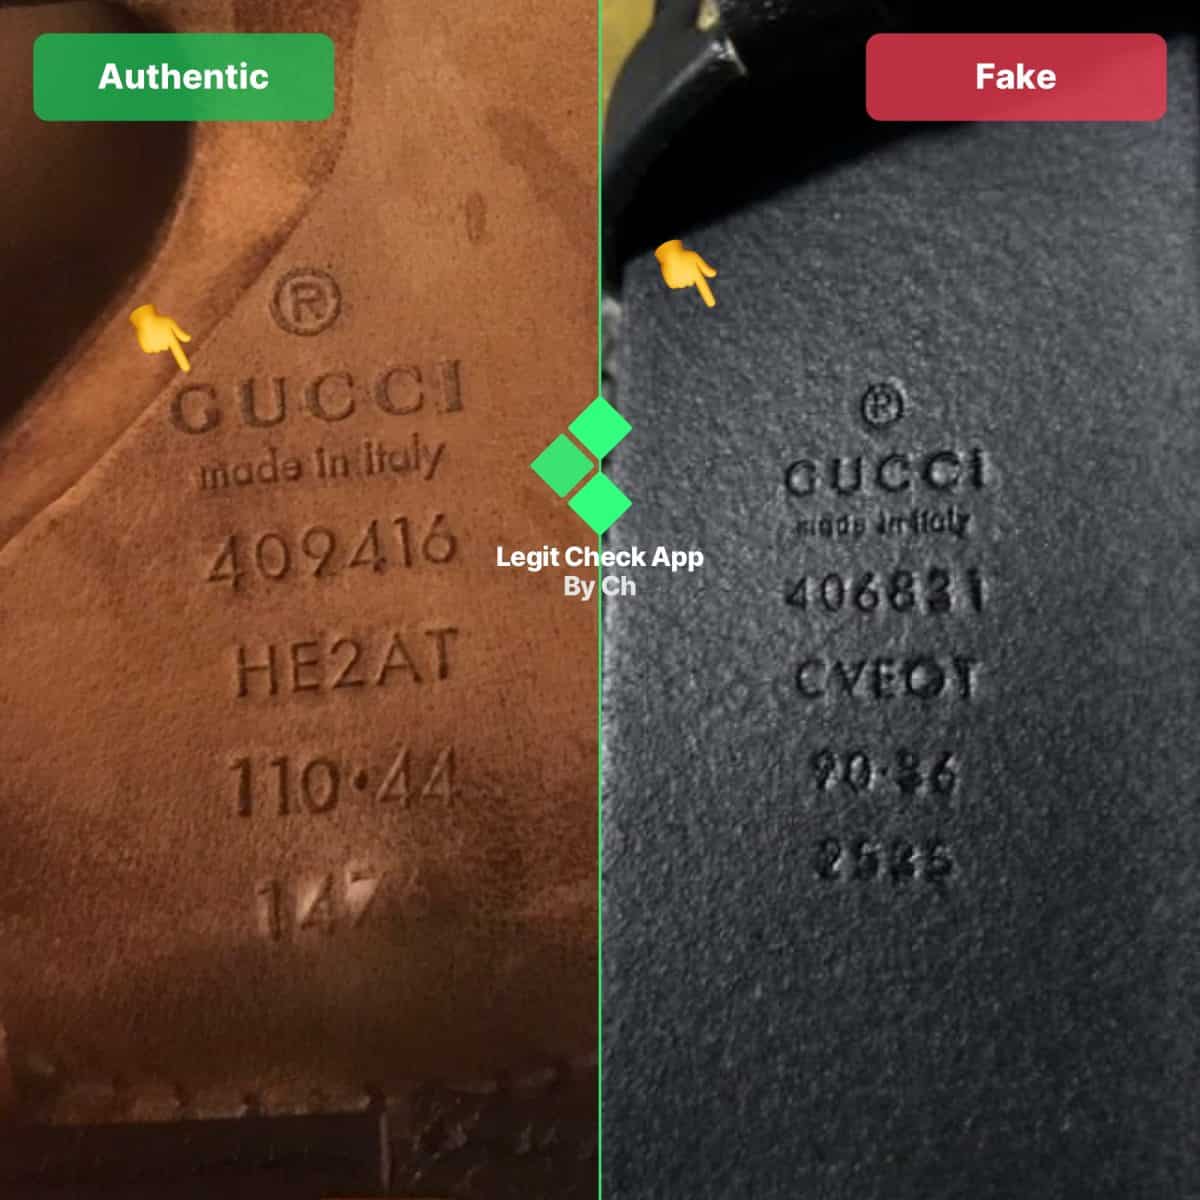 Ремень Gucci с серийным номером прошивка задней стороны